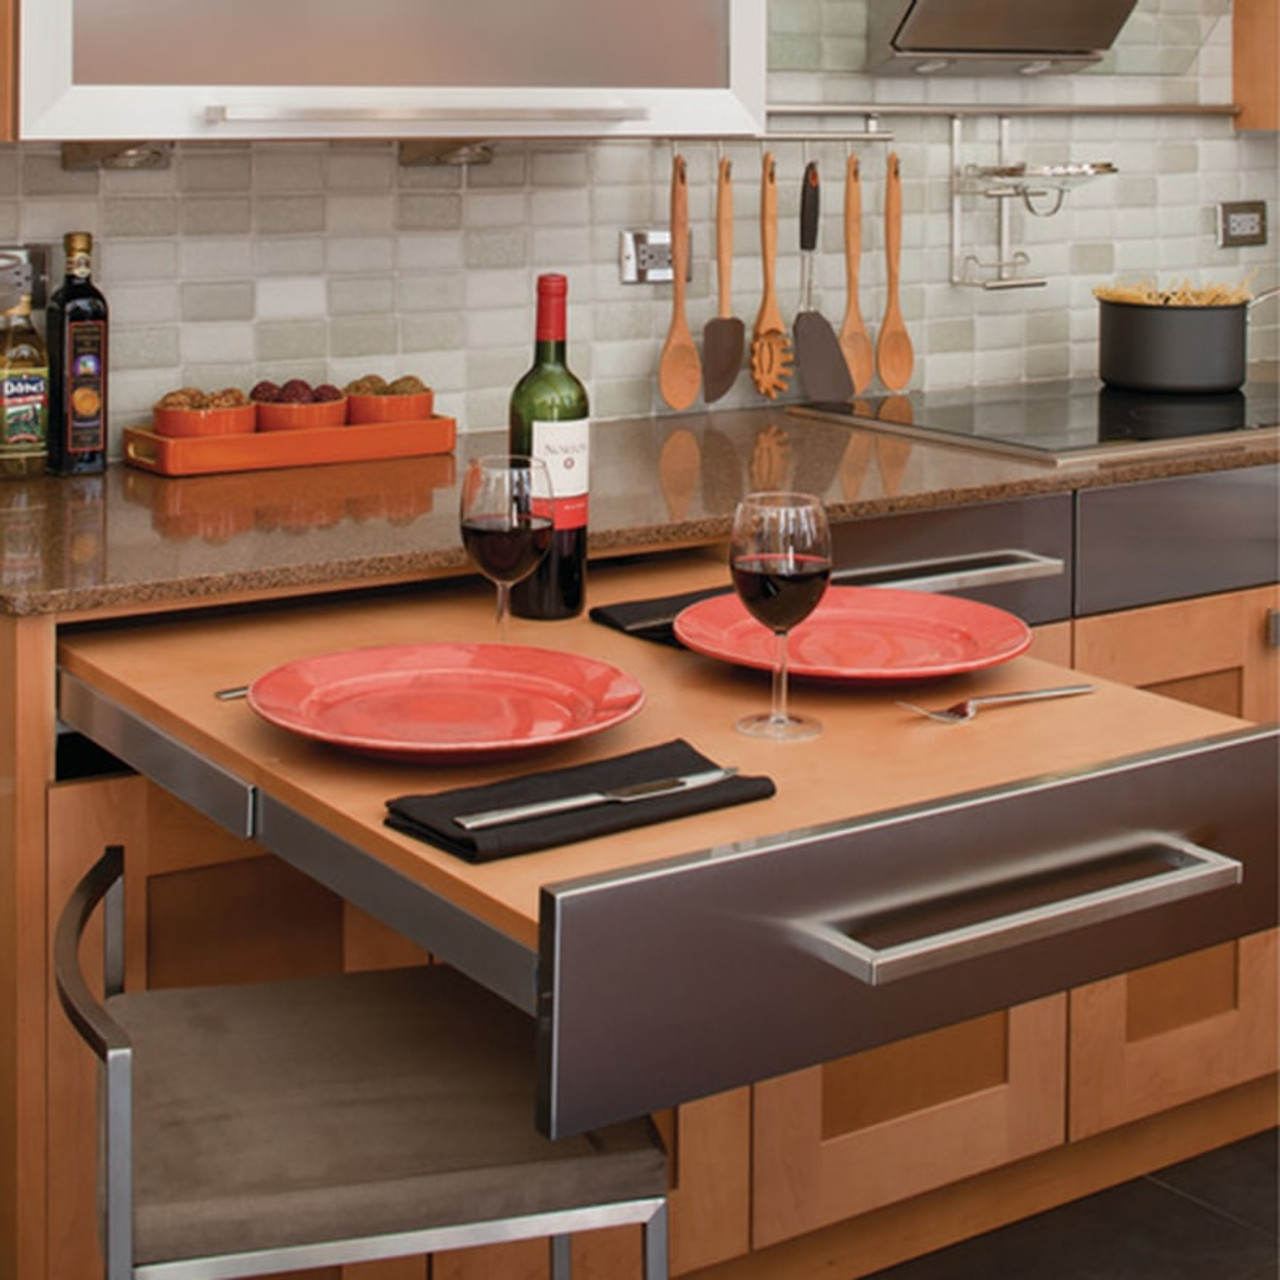 Hafele Non-Slip Shelf Liner Mats for Kitchen or Vanity Cabinets or